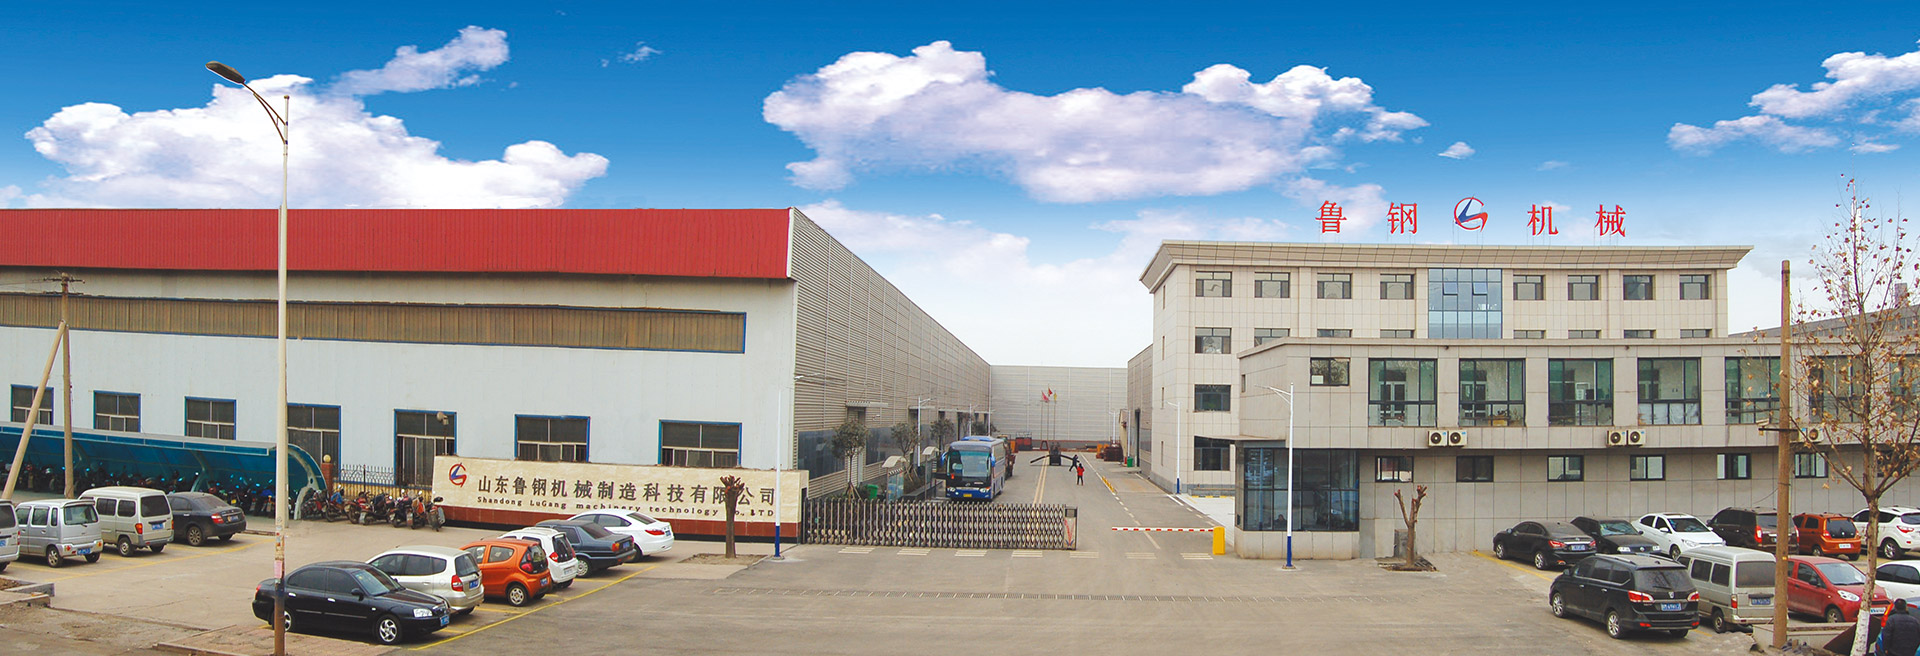 山東魯鋼機械制造科技有限公司